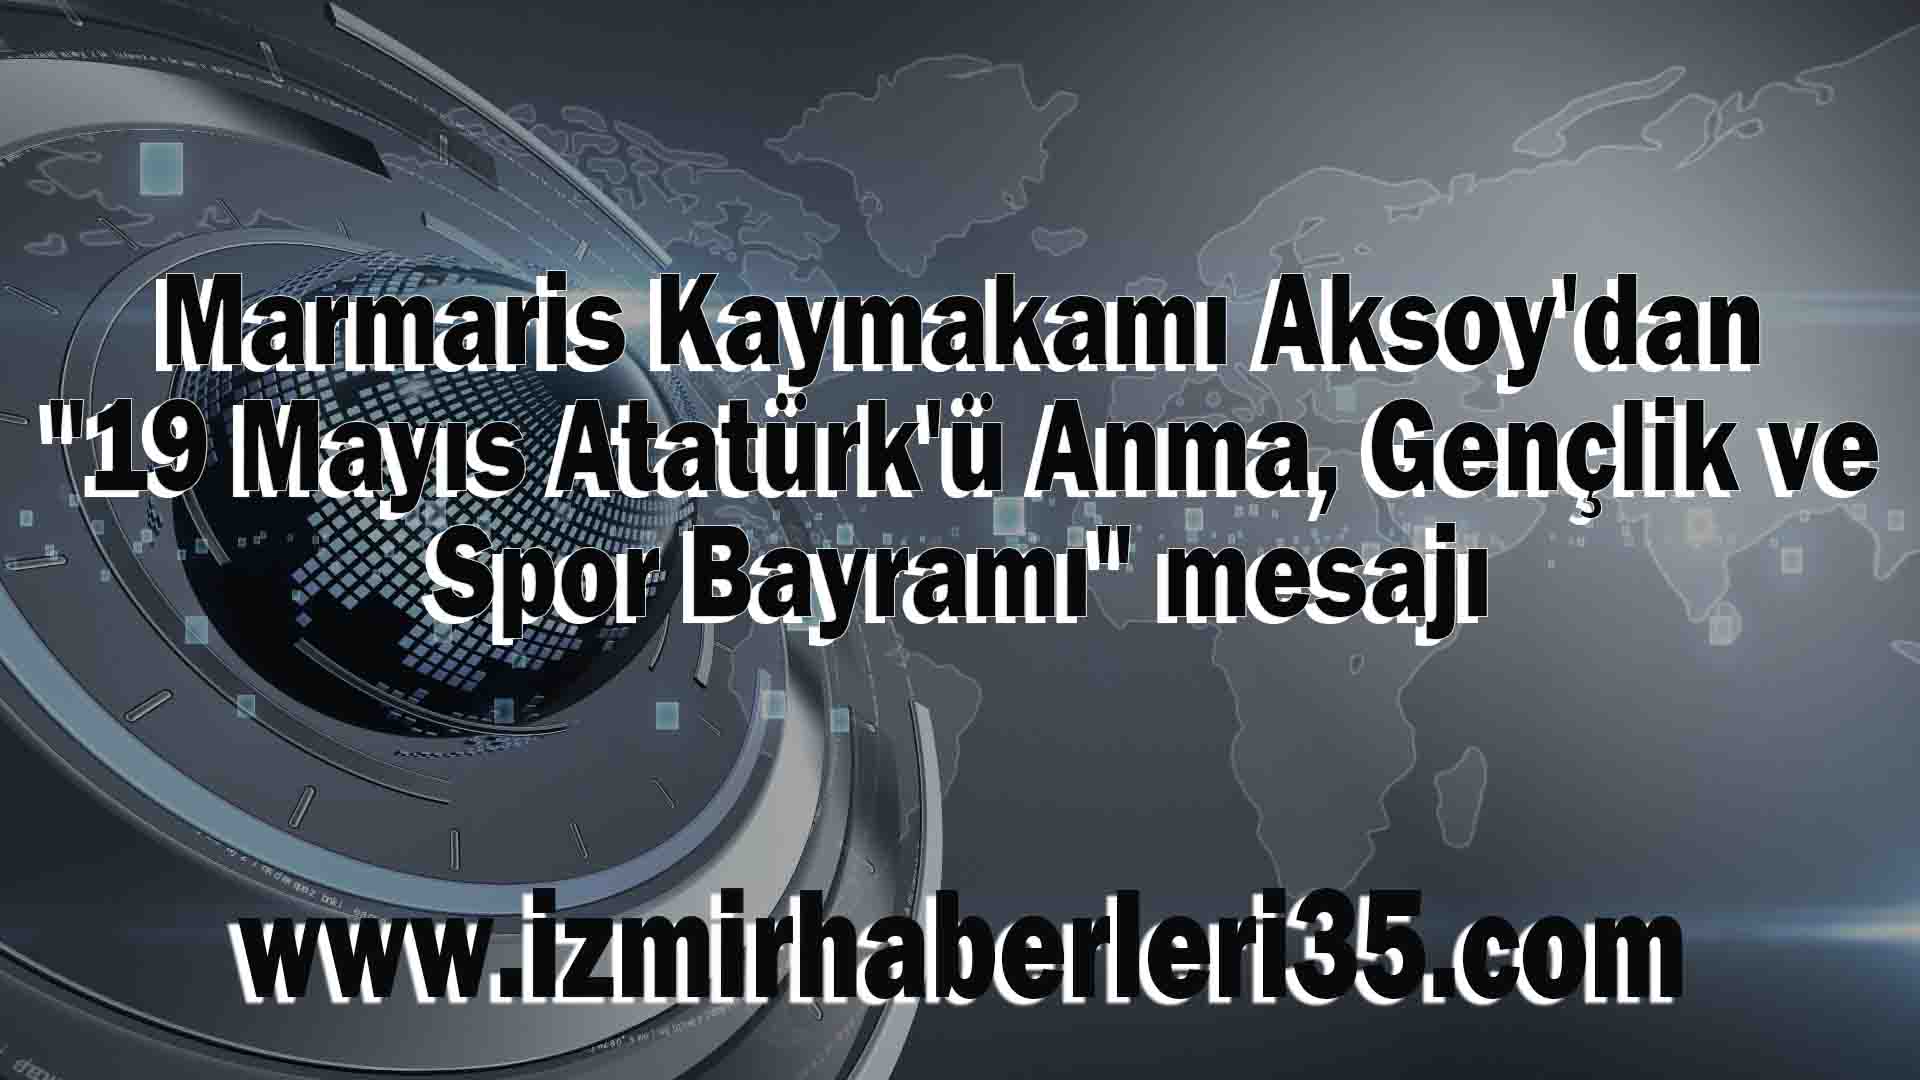 Marmaris Kaymakamı Aksoy'dan "19 Mayıs Atatürk'ü Anma, Gençlik ve Spor Bayramı" mesajı